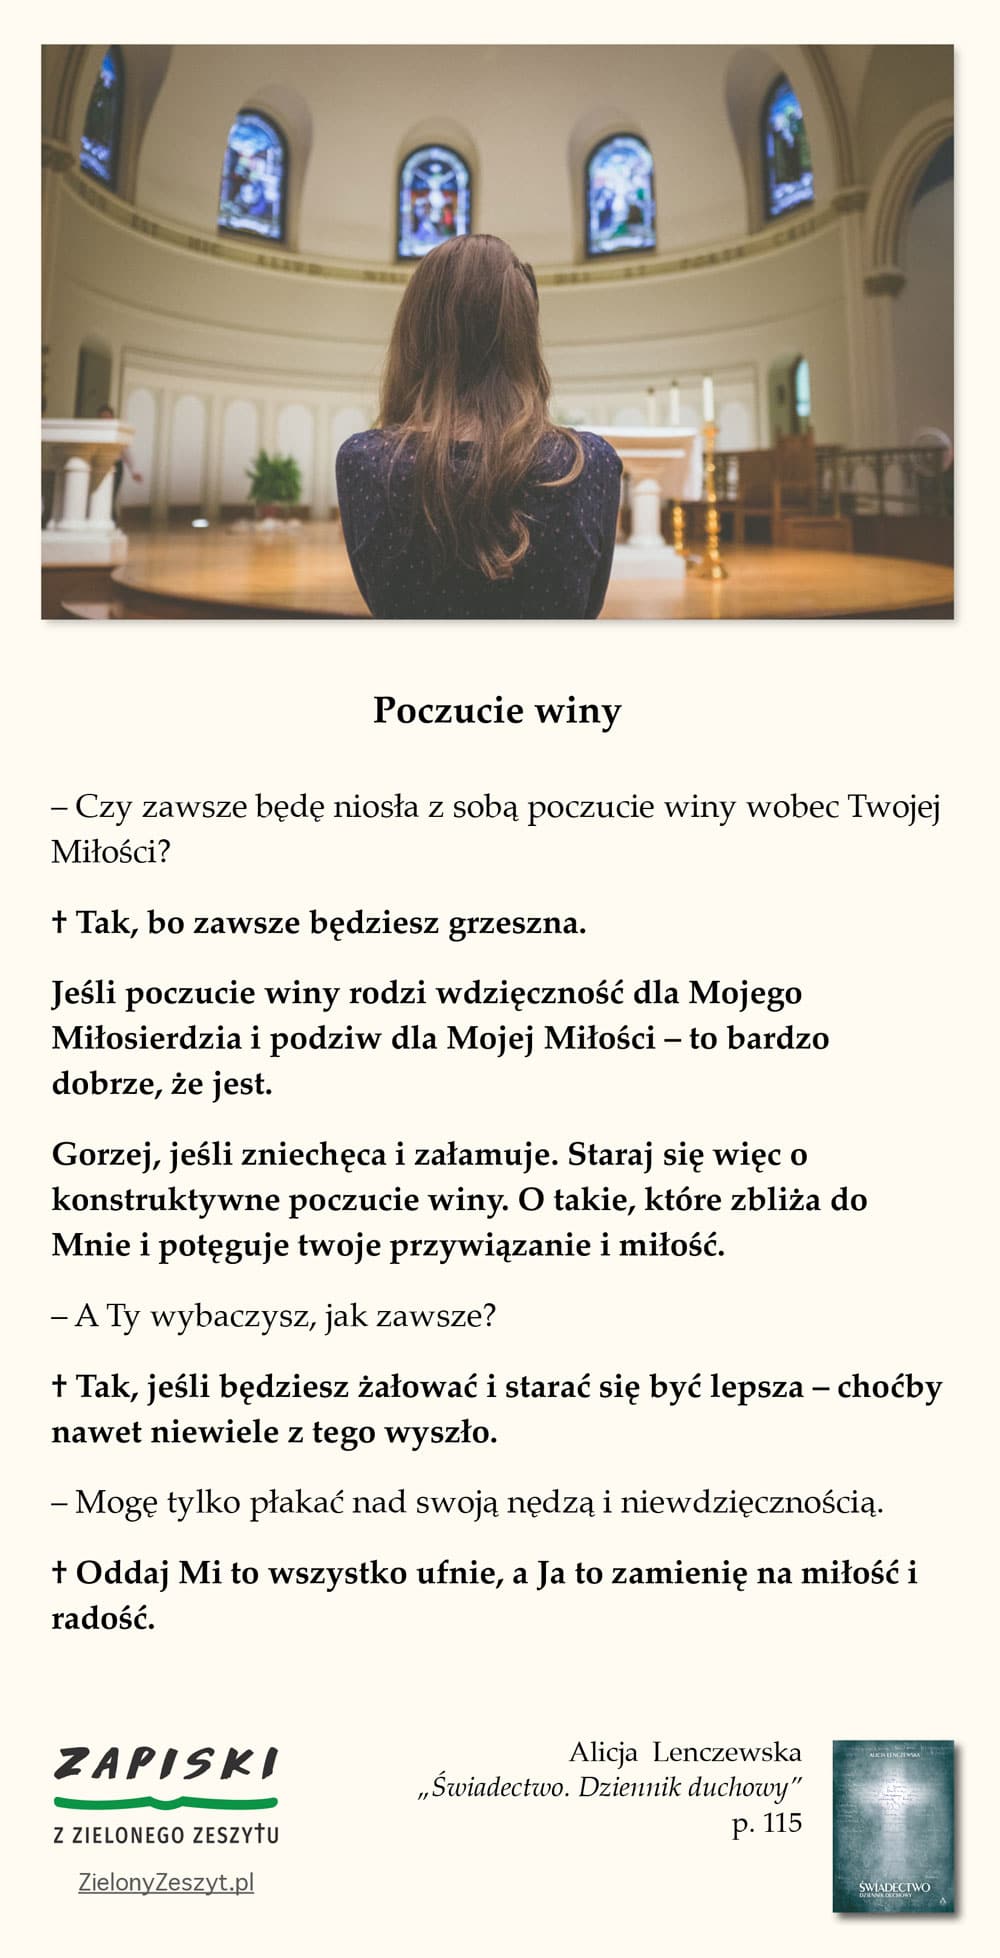 Alicja Lenczewska, „Świadectwo. Dziennik duchowy”, p. 115 (Poczucie winy; Świadectwo – Alicja Lenczewska)